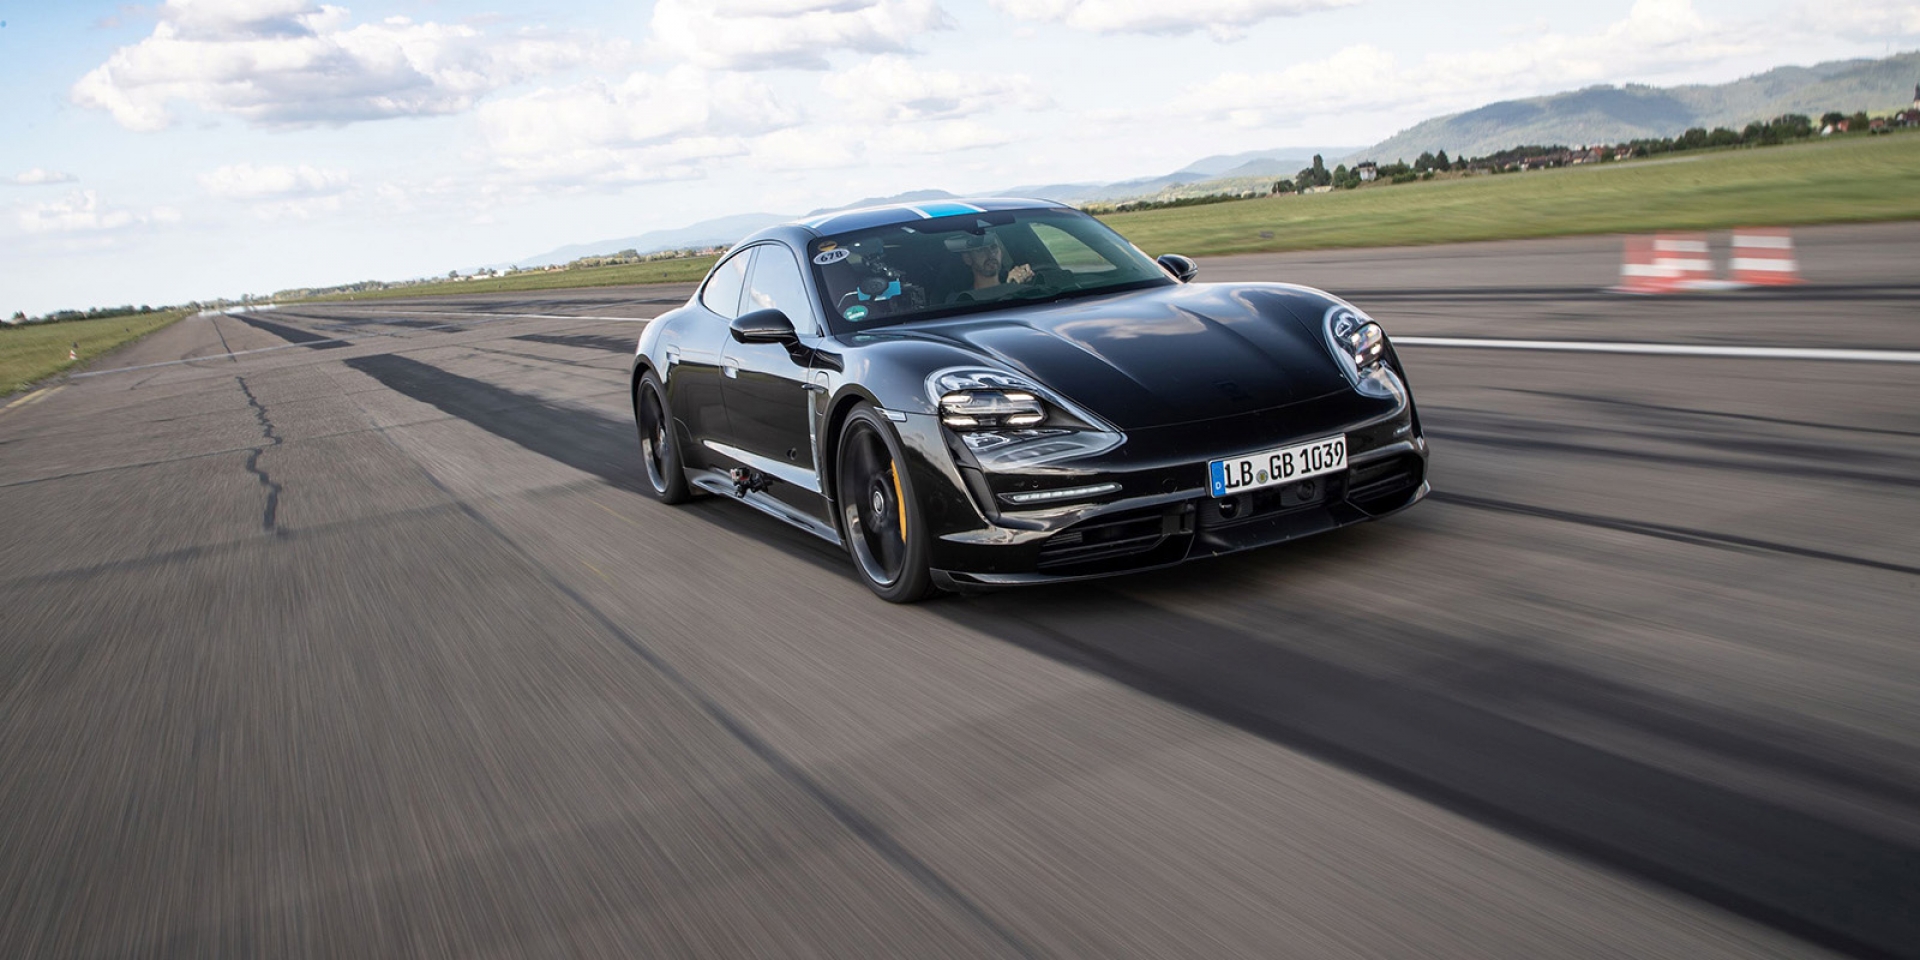 官方新聞稿。26 次0~200km/h加速 Porsche Taycan 展現出色穩定性 『Porsche純電跑車Taycan 預購專案』接單破700張 全球亮相倒數計時